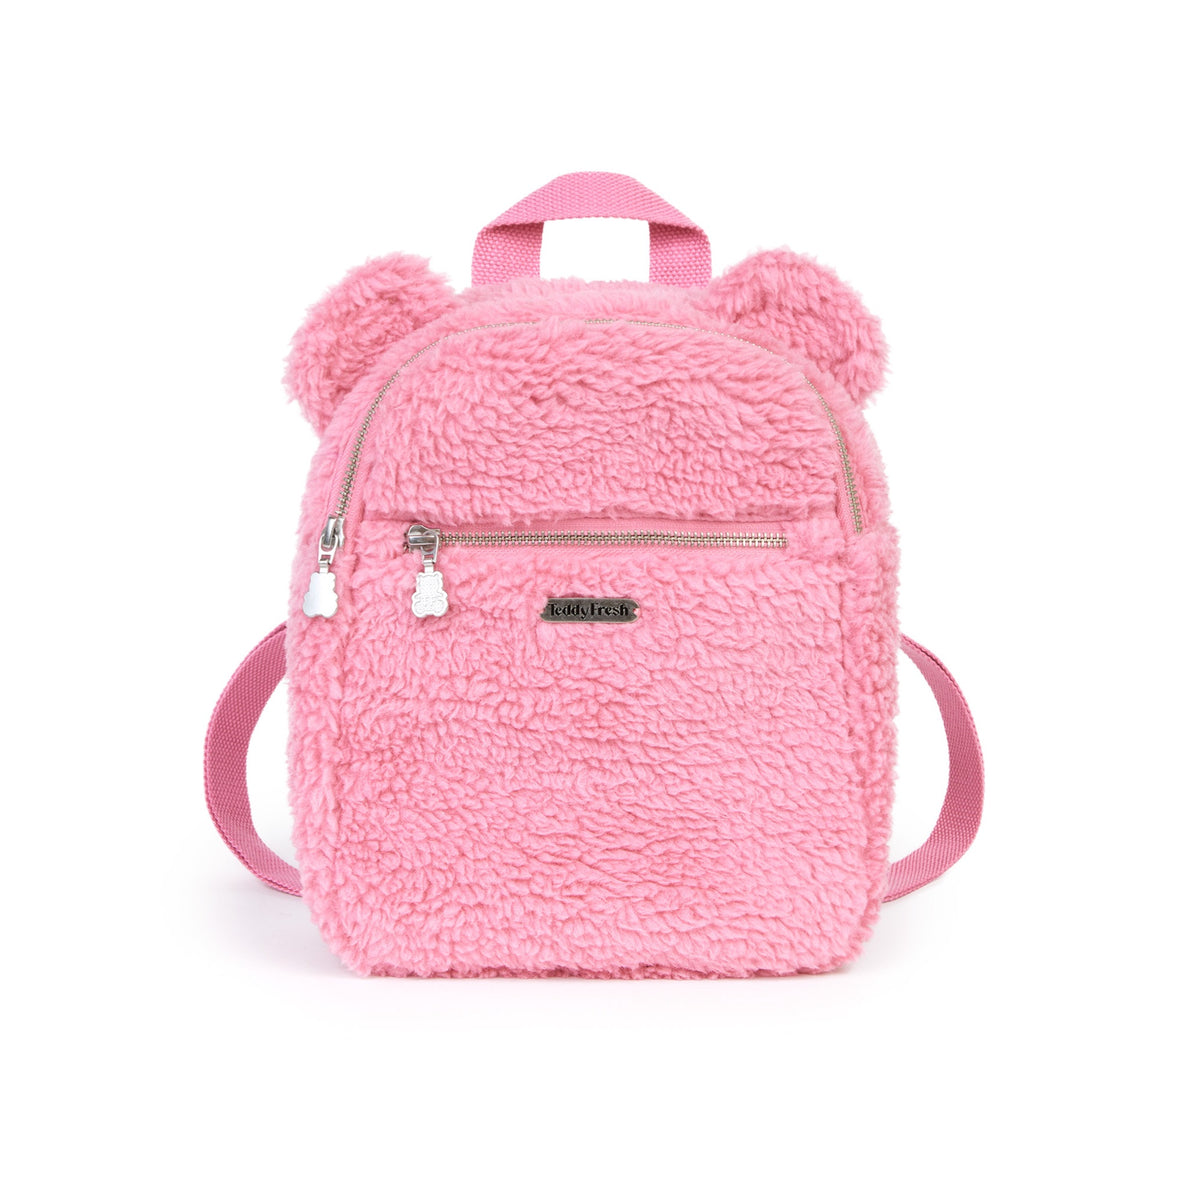 Oh, You Fancy Bag - Teddy Fresh Pink / One Size | Teddy Fresh